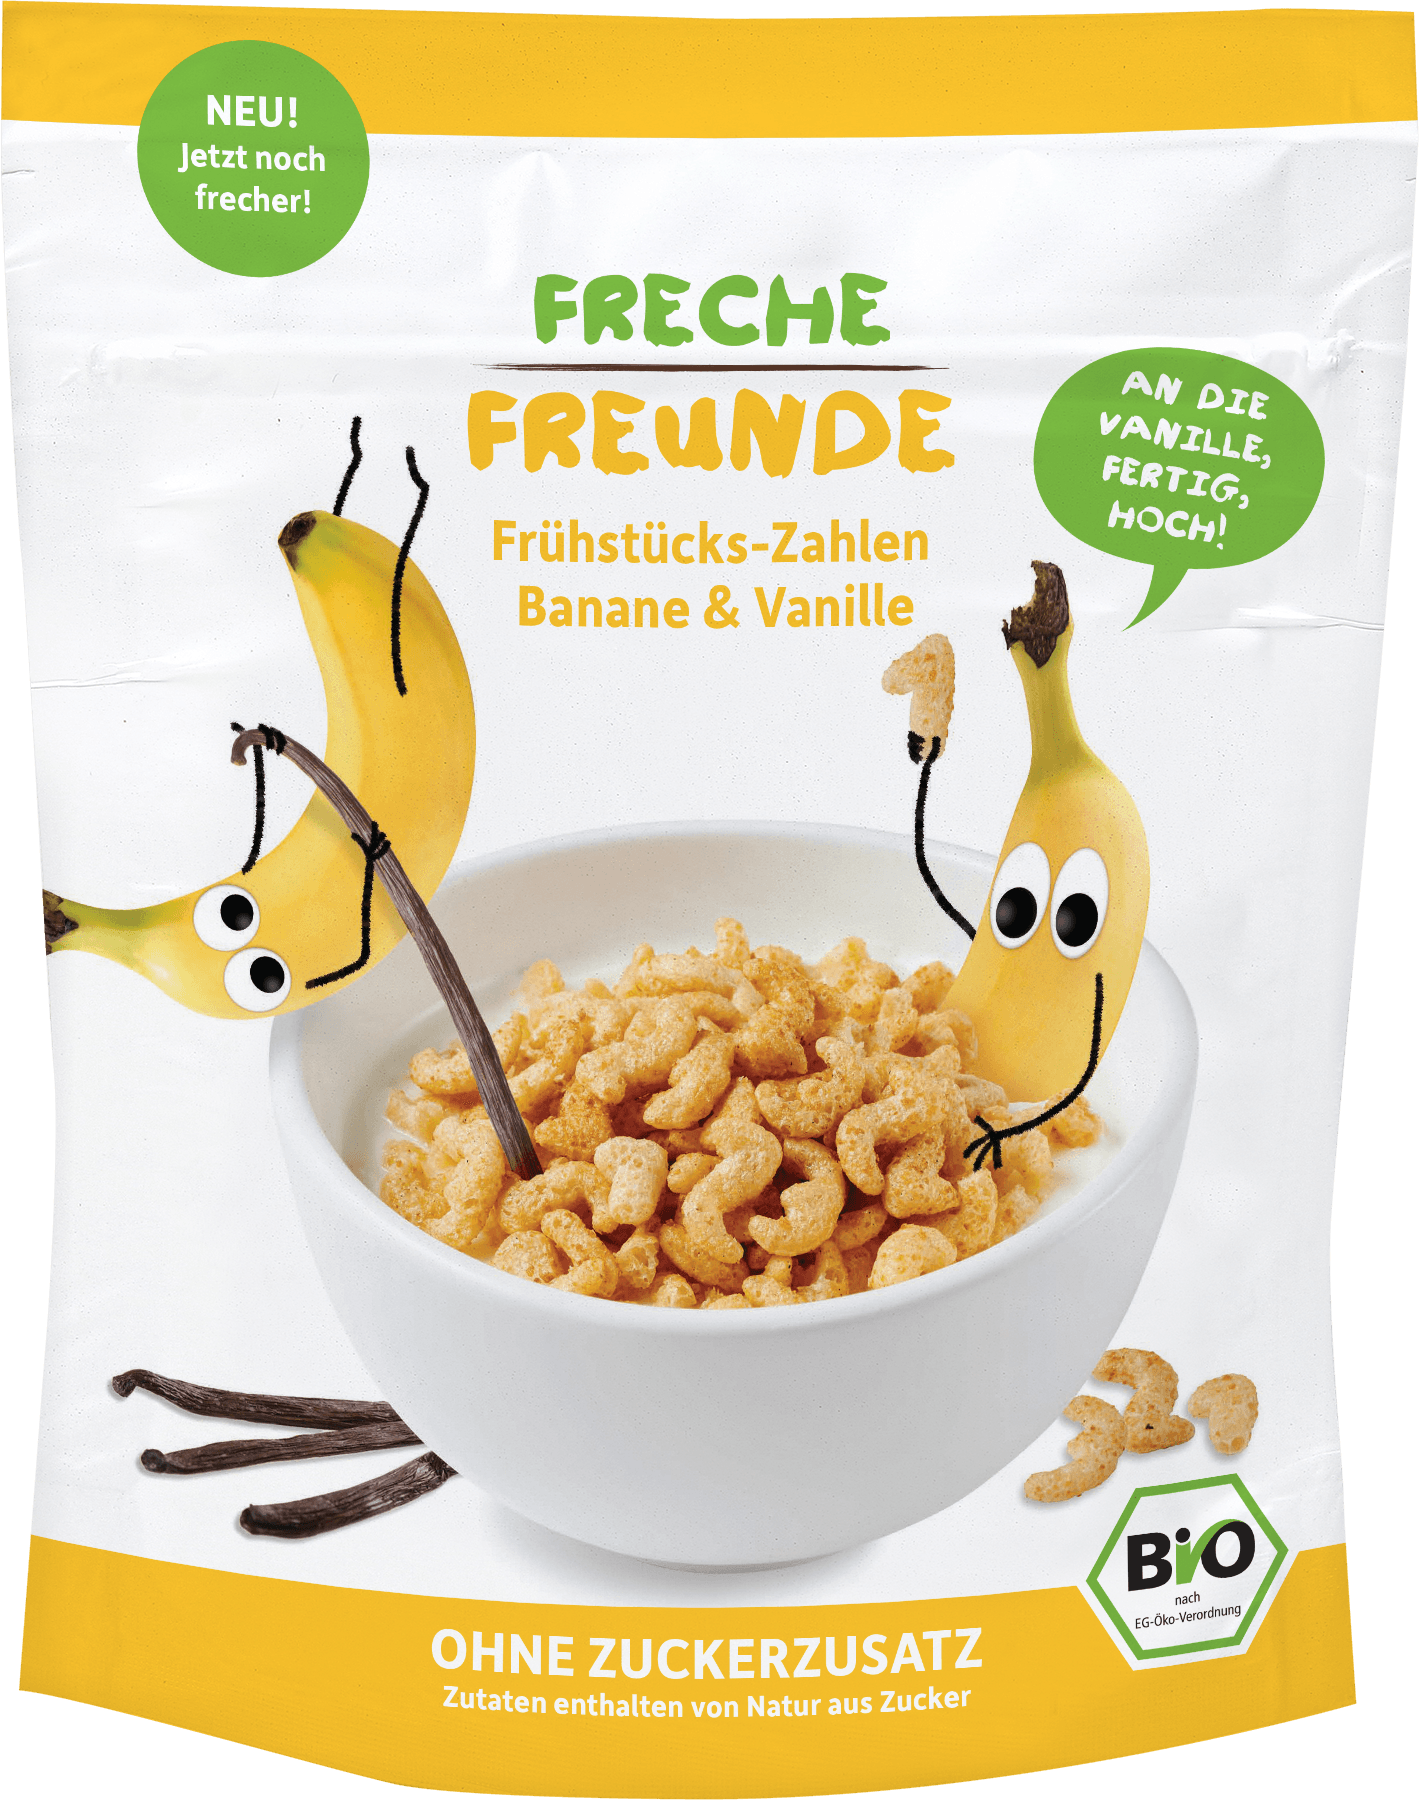 <div><h1>Cereale pt. mic dejun cu banane si vanilie bio 125g</h1><p>-vegan, bio-</p><p>Un mod ideal de a incepe ziua pentru cei mici, cerealele in forma de&nbsp;cifre Erdbar sigur le va capta atentia.<br />Potrivite pentru copilasi incepand de la varsta de 1 an.</p><p><strong>Ingrediente:&nbsp;</strong>fulgi de <strong>ovaz</strong>* , faina de grau* , faina de porumb*, banane pudra* (8%), suc de mere concentrat* (15%), vanilie de Bourbon* (0.15%), vitamina B1 (0.60mg). Nimic altceva.<br />*din agricultura ecologica</p><p><strong>Valori nutritionale/100g:</strong></p><p><span id="result_box" lang="ro">Energie: 1460kJ&nbsp;/&nbsp;345kcal<br />Proteine: 9.5g<br />Carbohidrati:&nbsp;68 g<br />&nbsp;&nbsp;&nbsp;&nbsp; din care zaharuri:&nbsp;(*zaharul continut in mod natural de produsele din compozitie)&nbsp;12g<br />Grasimi: 2.9g<br />&nbsp;&nbsp;&nbsp;&nbsp; din care&nbsp;saturate&nbsp;0.5g<br />Fibre: 5.4g<br />Saruri: 0g<br />100%&nbsp;vegan</span></p><p>Produs certificat ecologic</p><p>Fabricat in Germania</p><p>125g</p></div><p>&nbsp;</p>